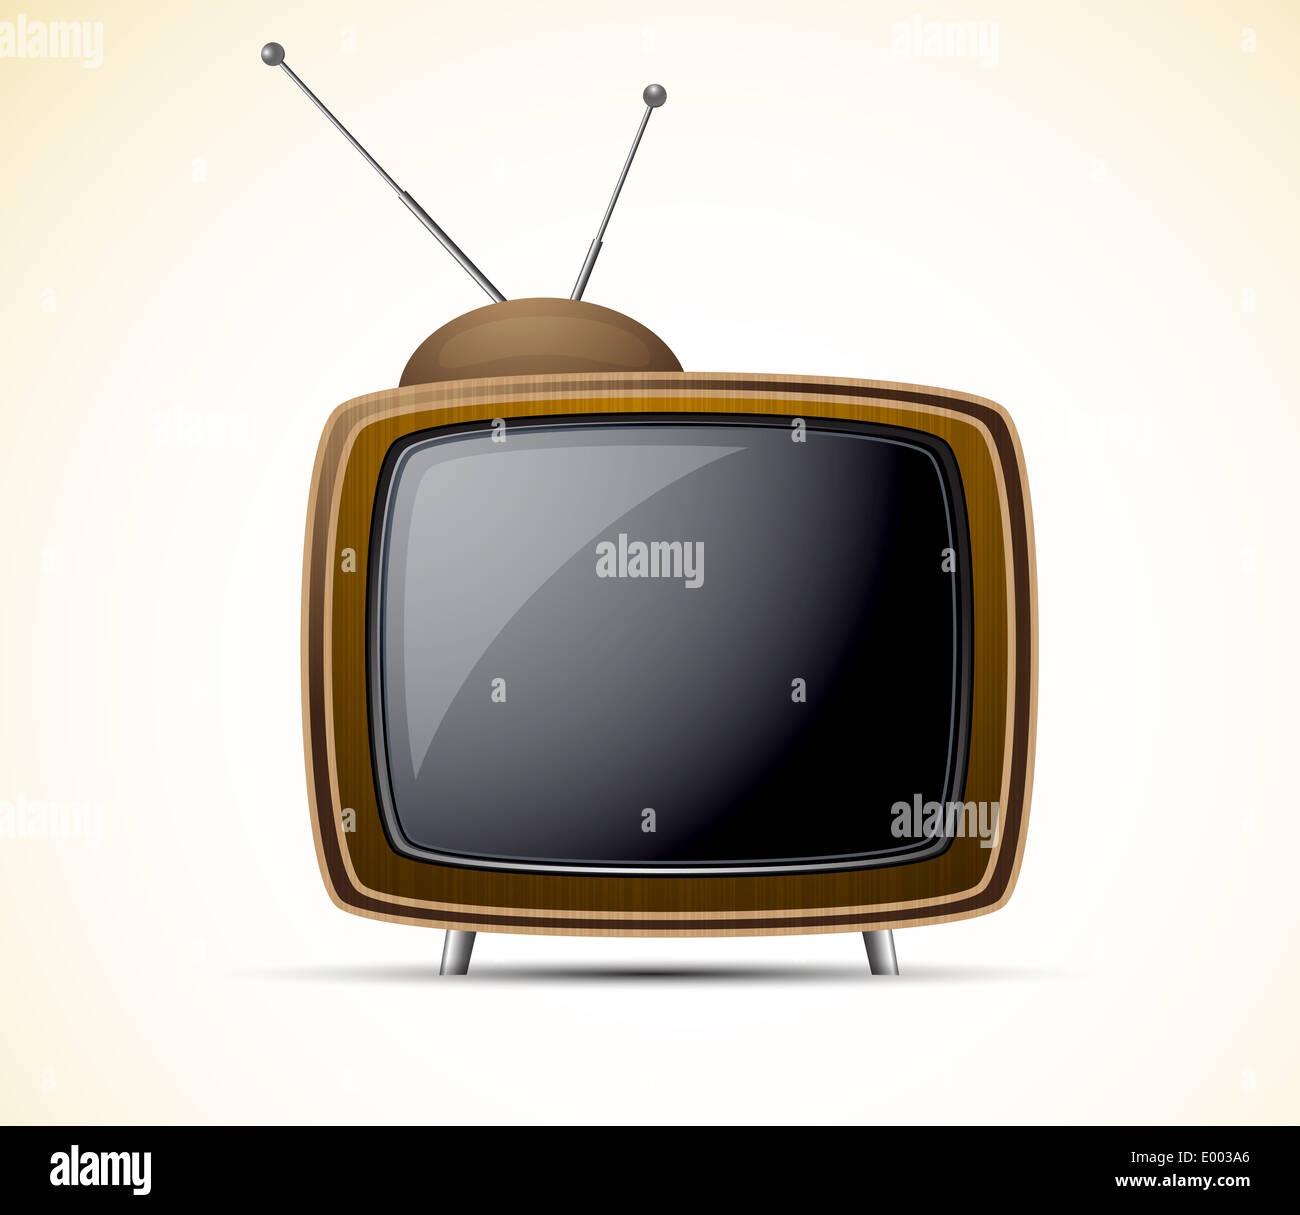 Carton retro tv in brown color. Shiny illustration Stock Photo